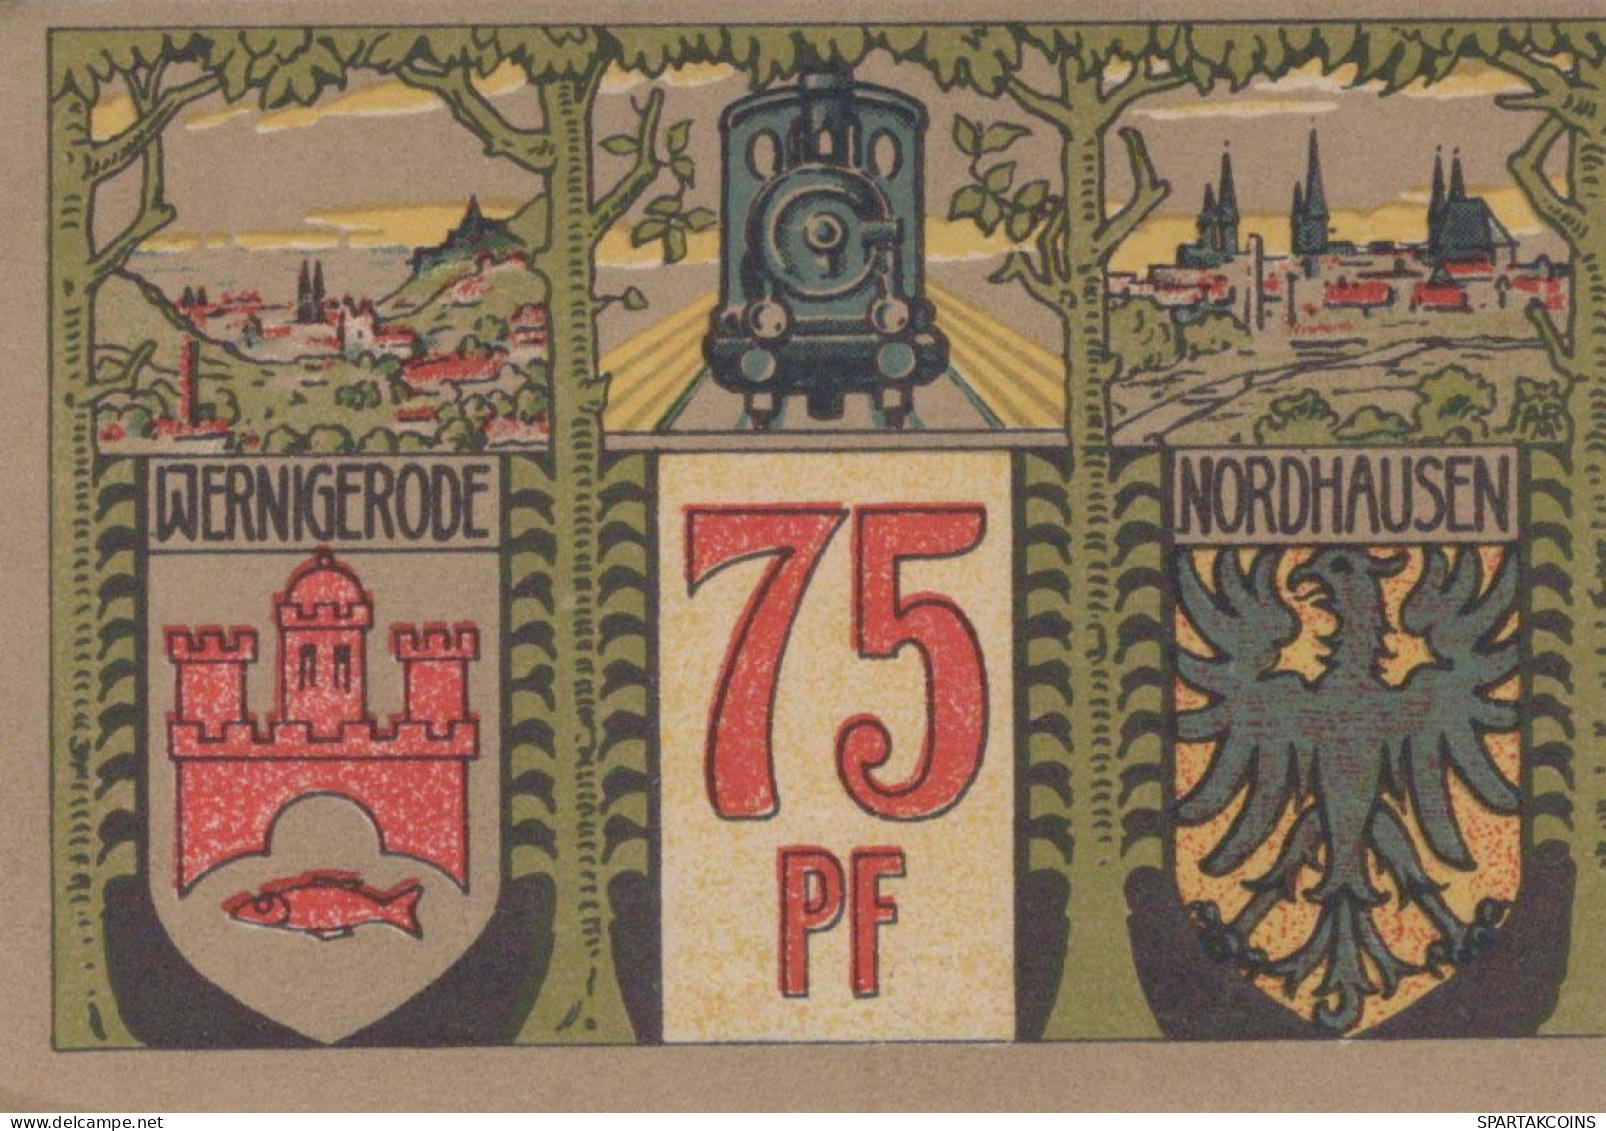 75 PFENNIG 1921 Stadt WERNIGERODE Saxony UNC DEUTSCHLAND Notgeld Banknote #PH672 - Lokale Ausgaben